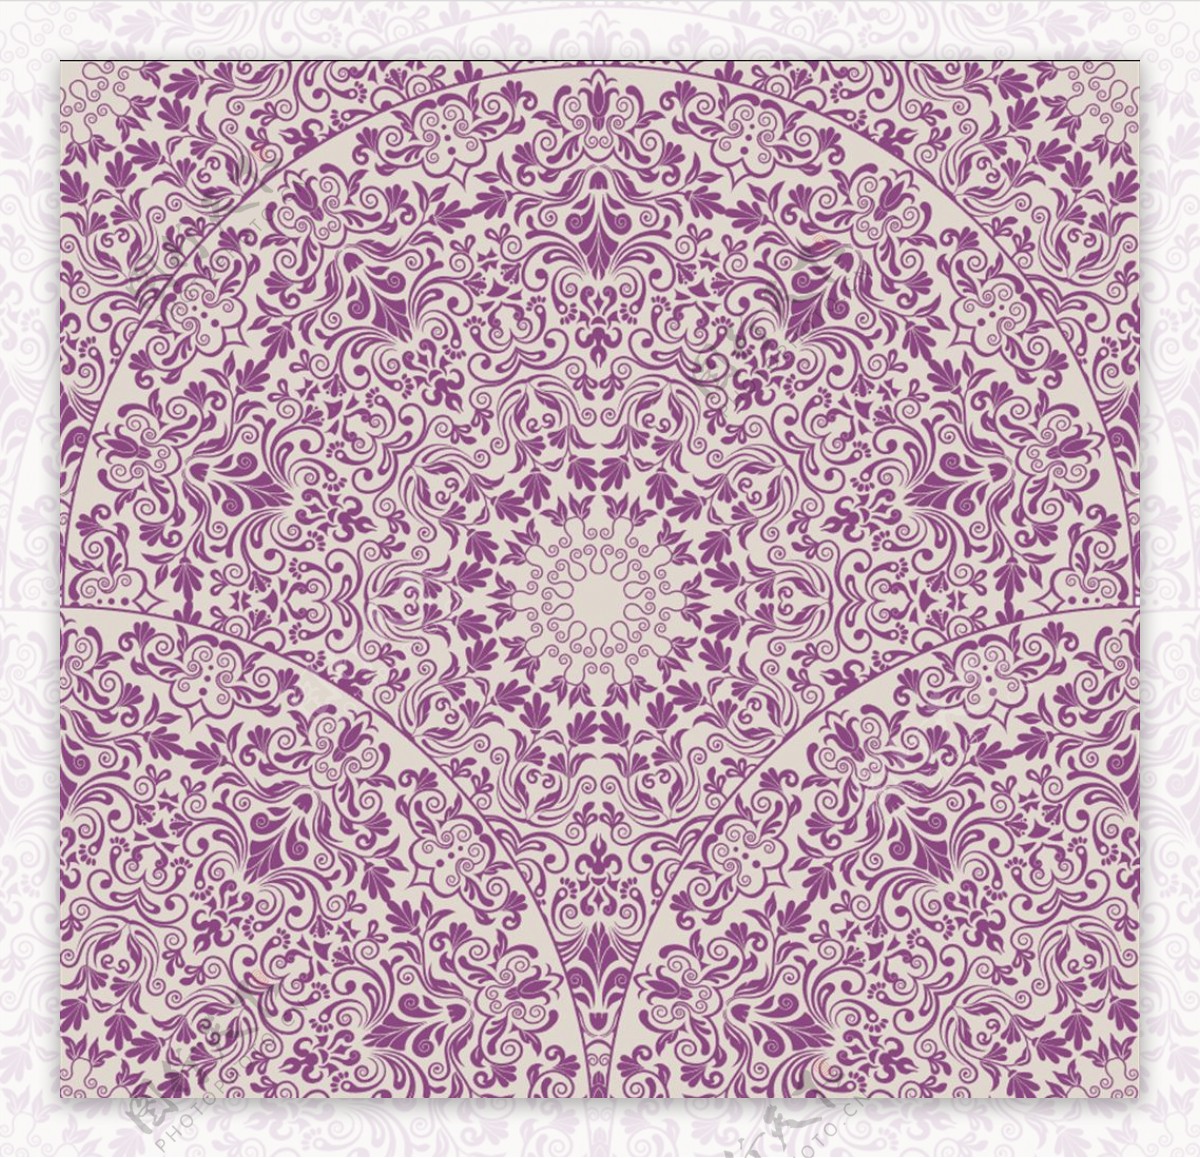 紫色精美花纹背景矢量素材